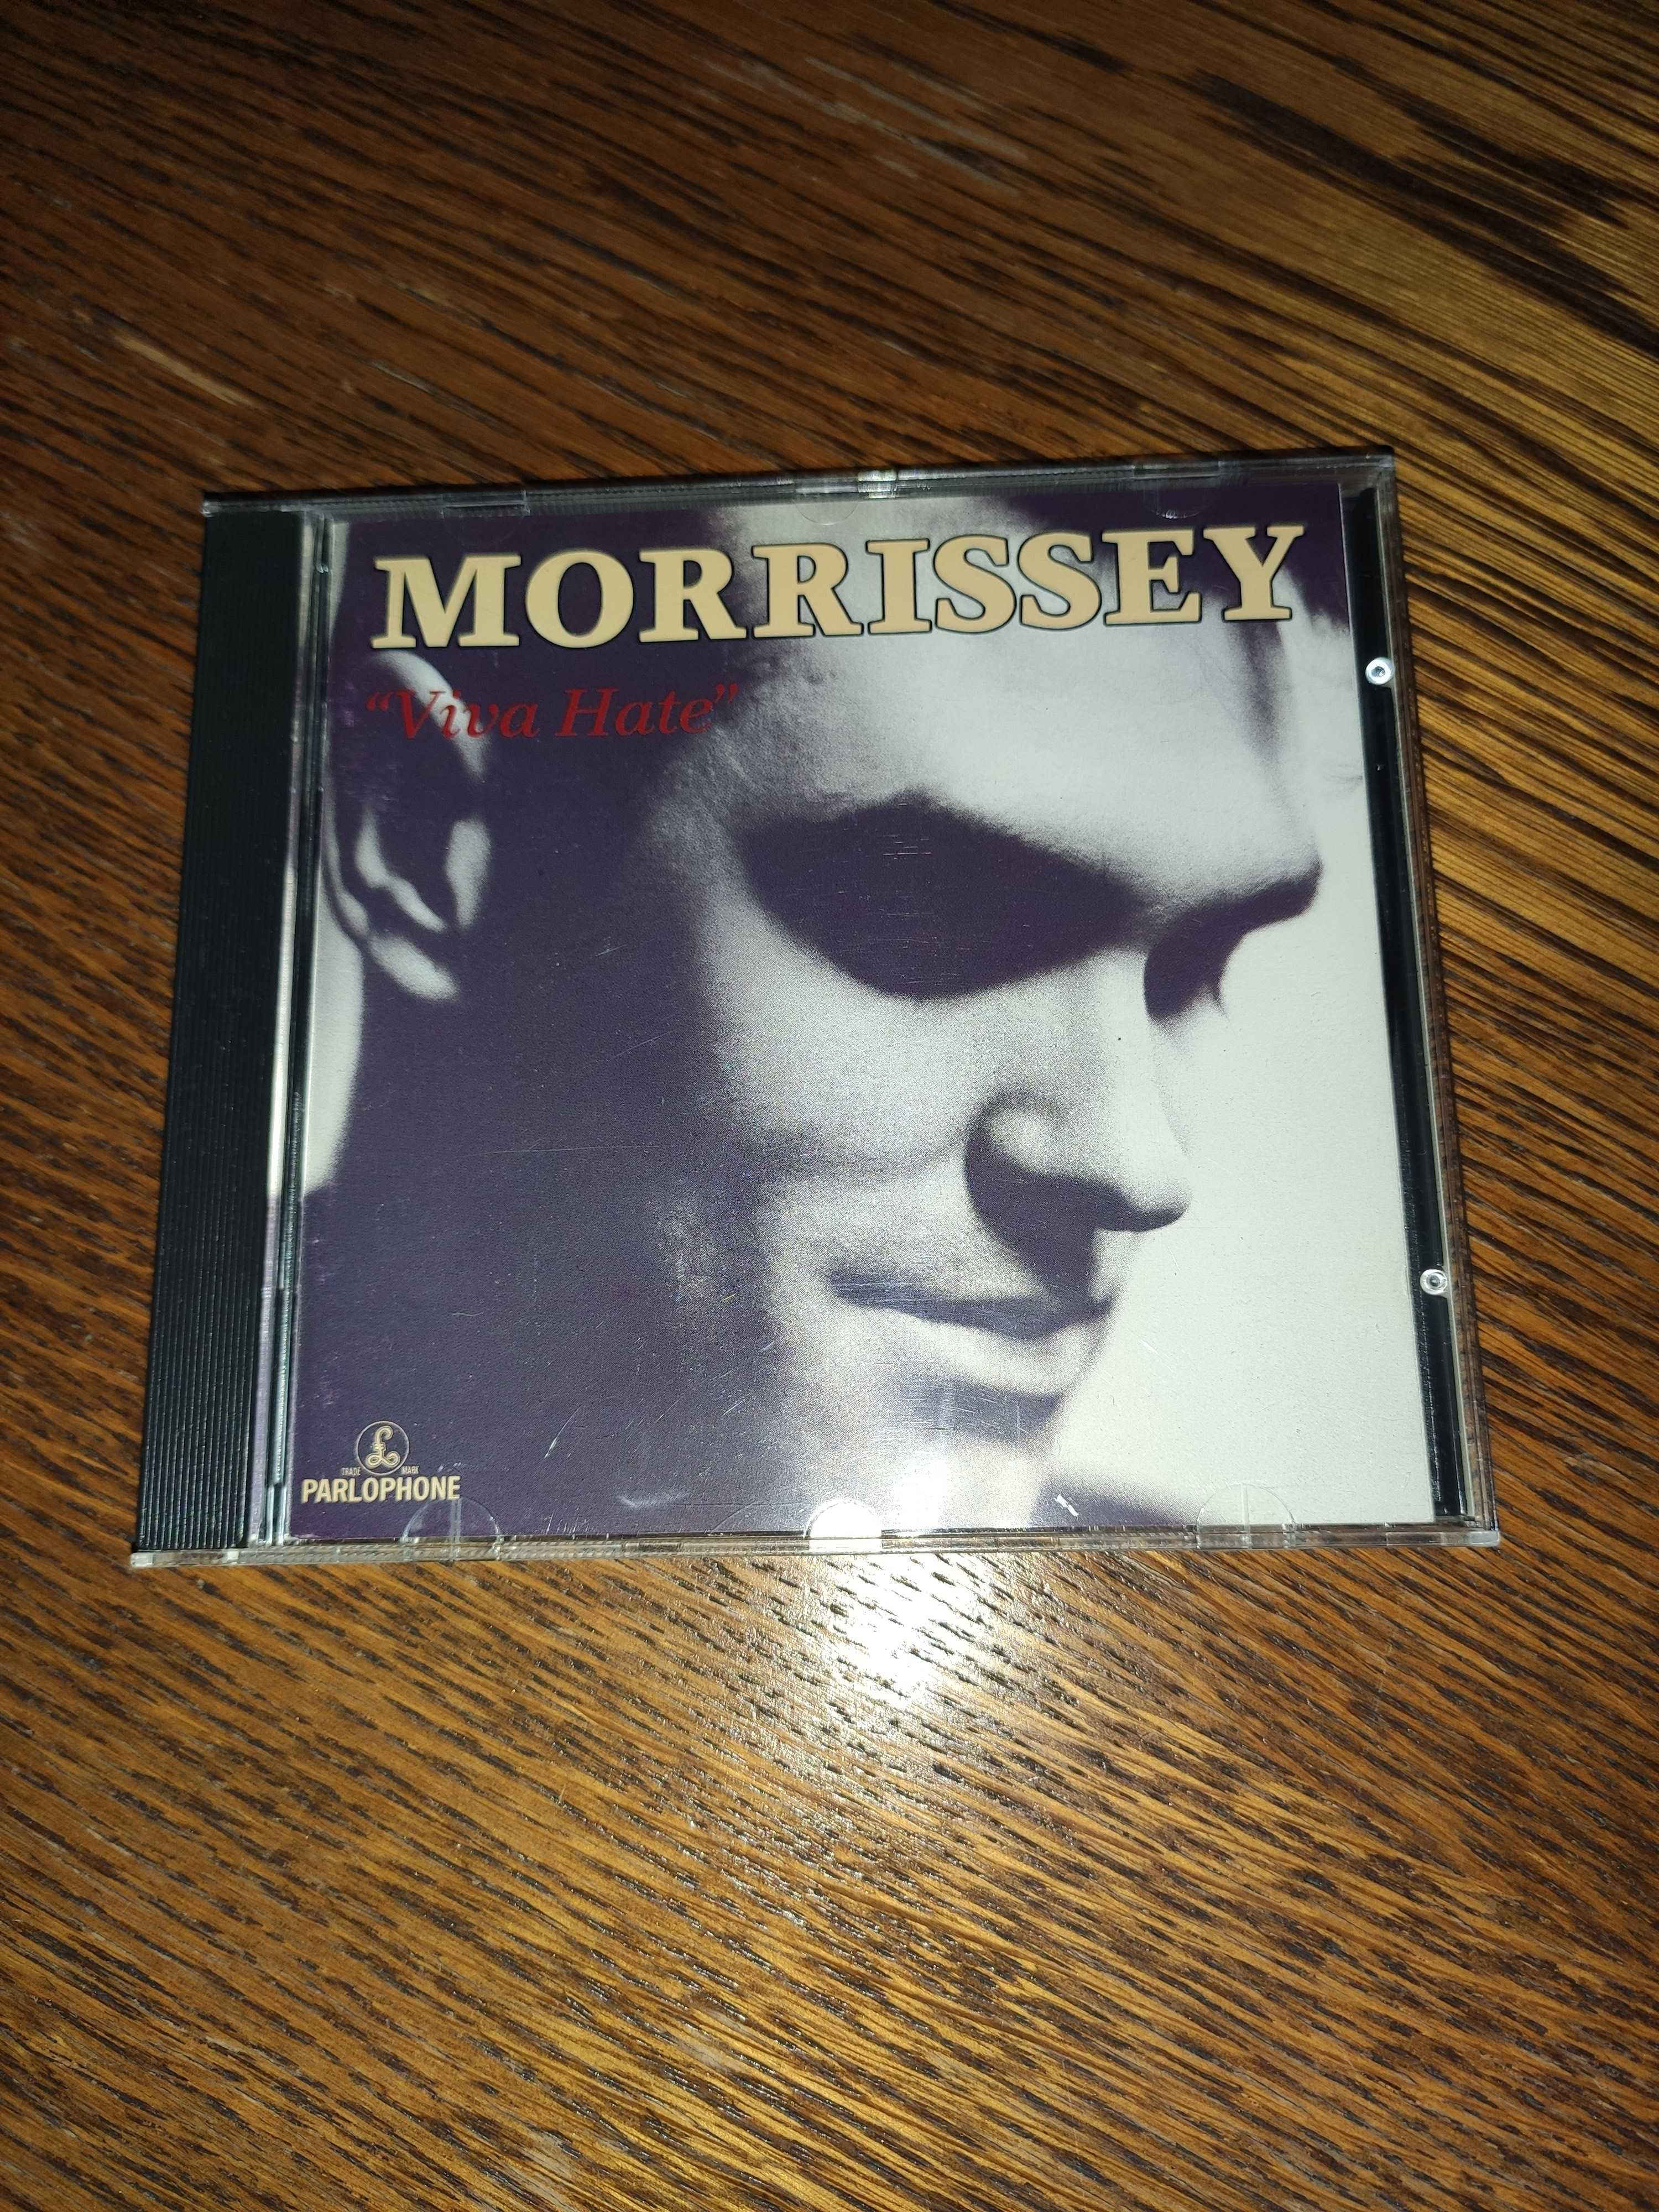 Morrissey - Viva hate, CD 1995, UK, The Smiths